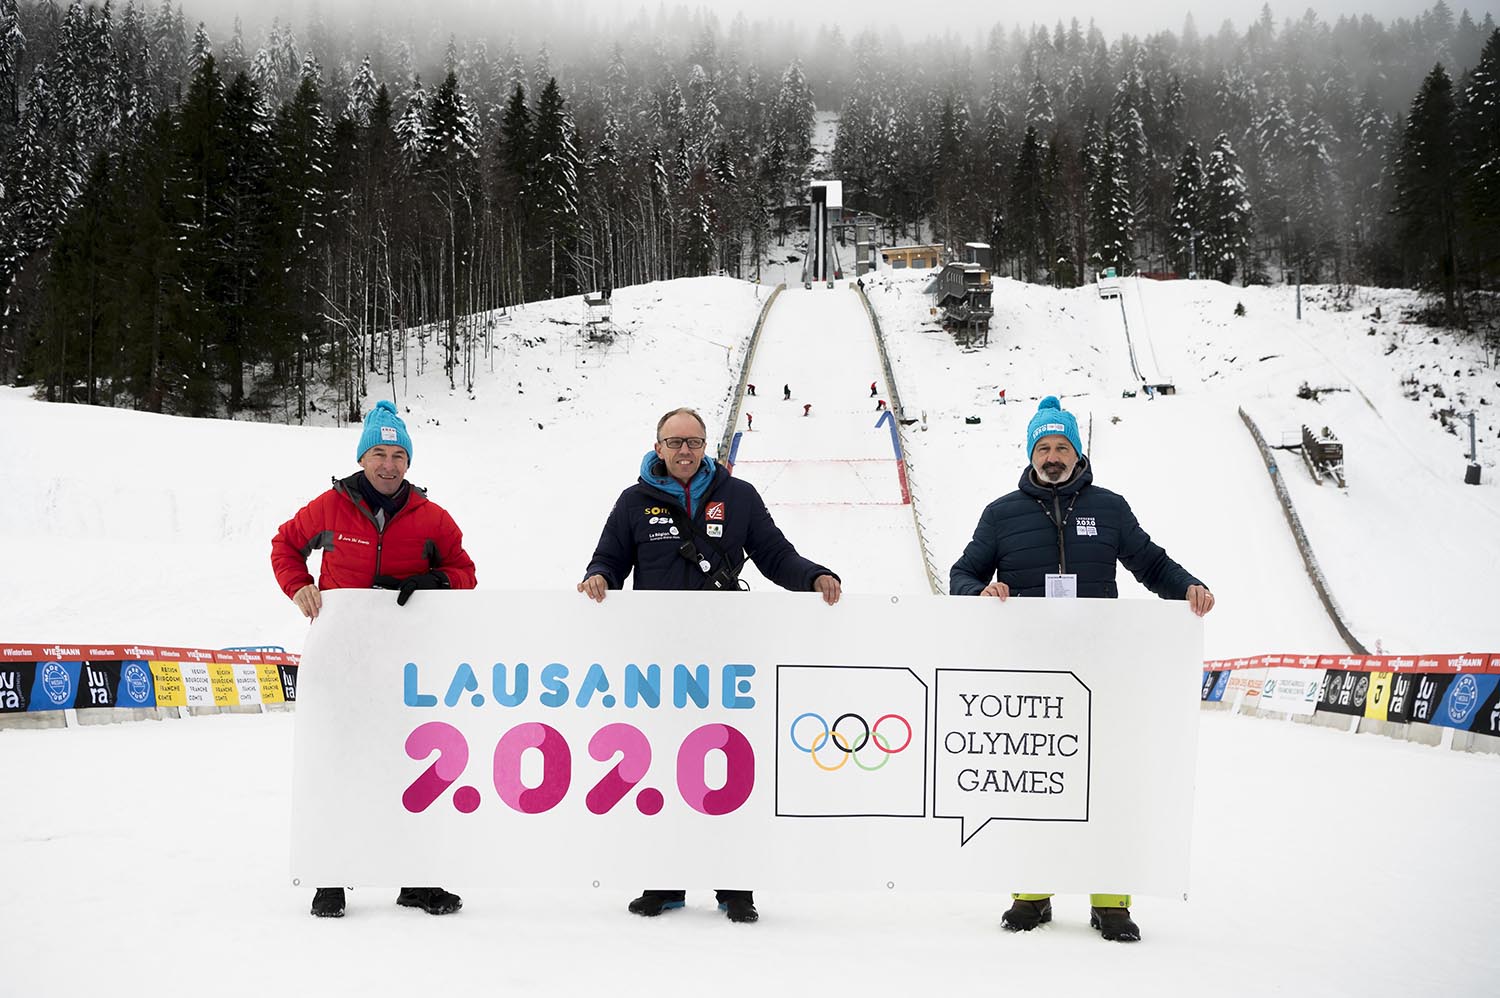 Les interlocuteurs des Jeux Olympiques de la Jeunesse Lausanne 2020, stade des Tuffes, décembre 2018 - Crédit Jura Ski Events